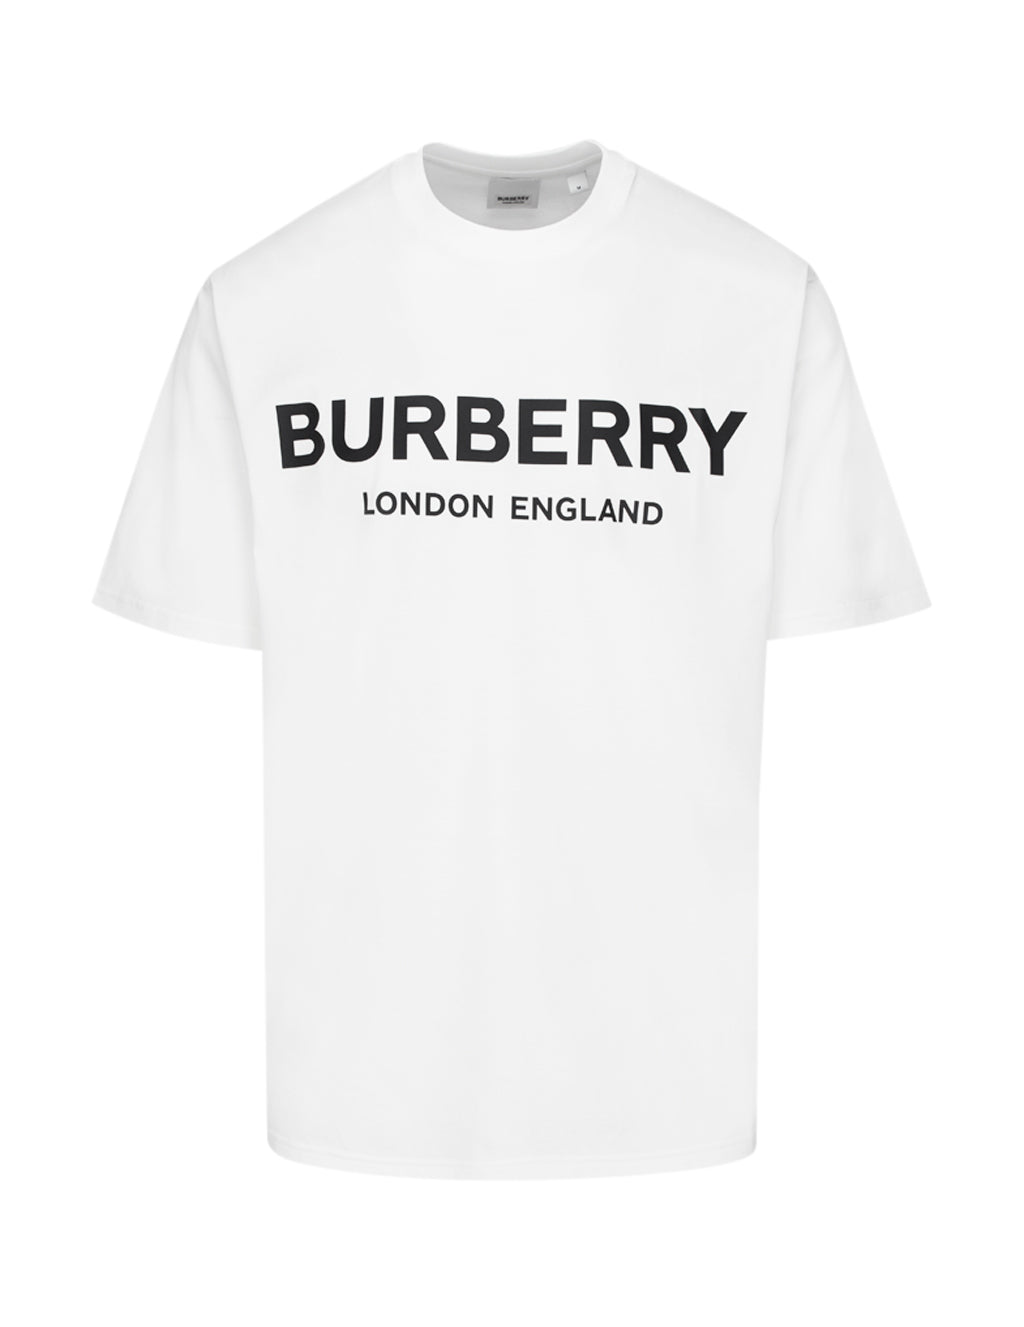 burberry mens white shirt